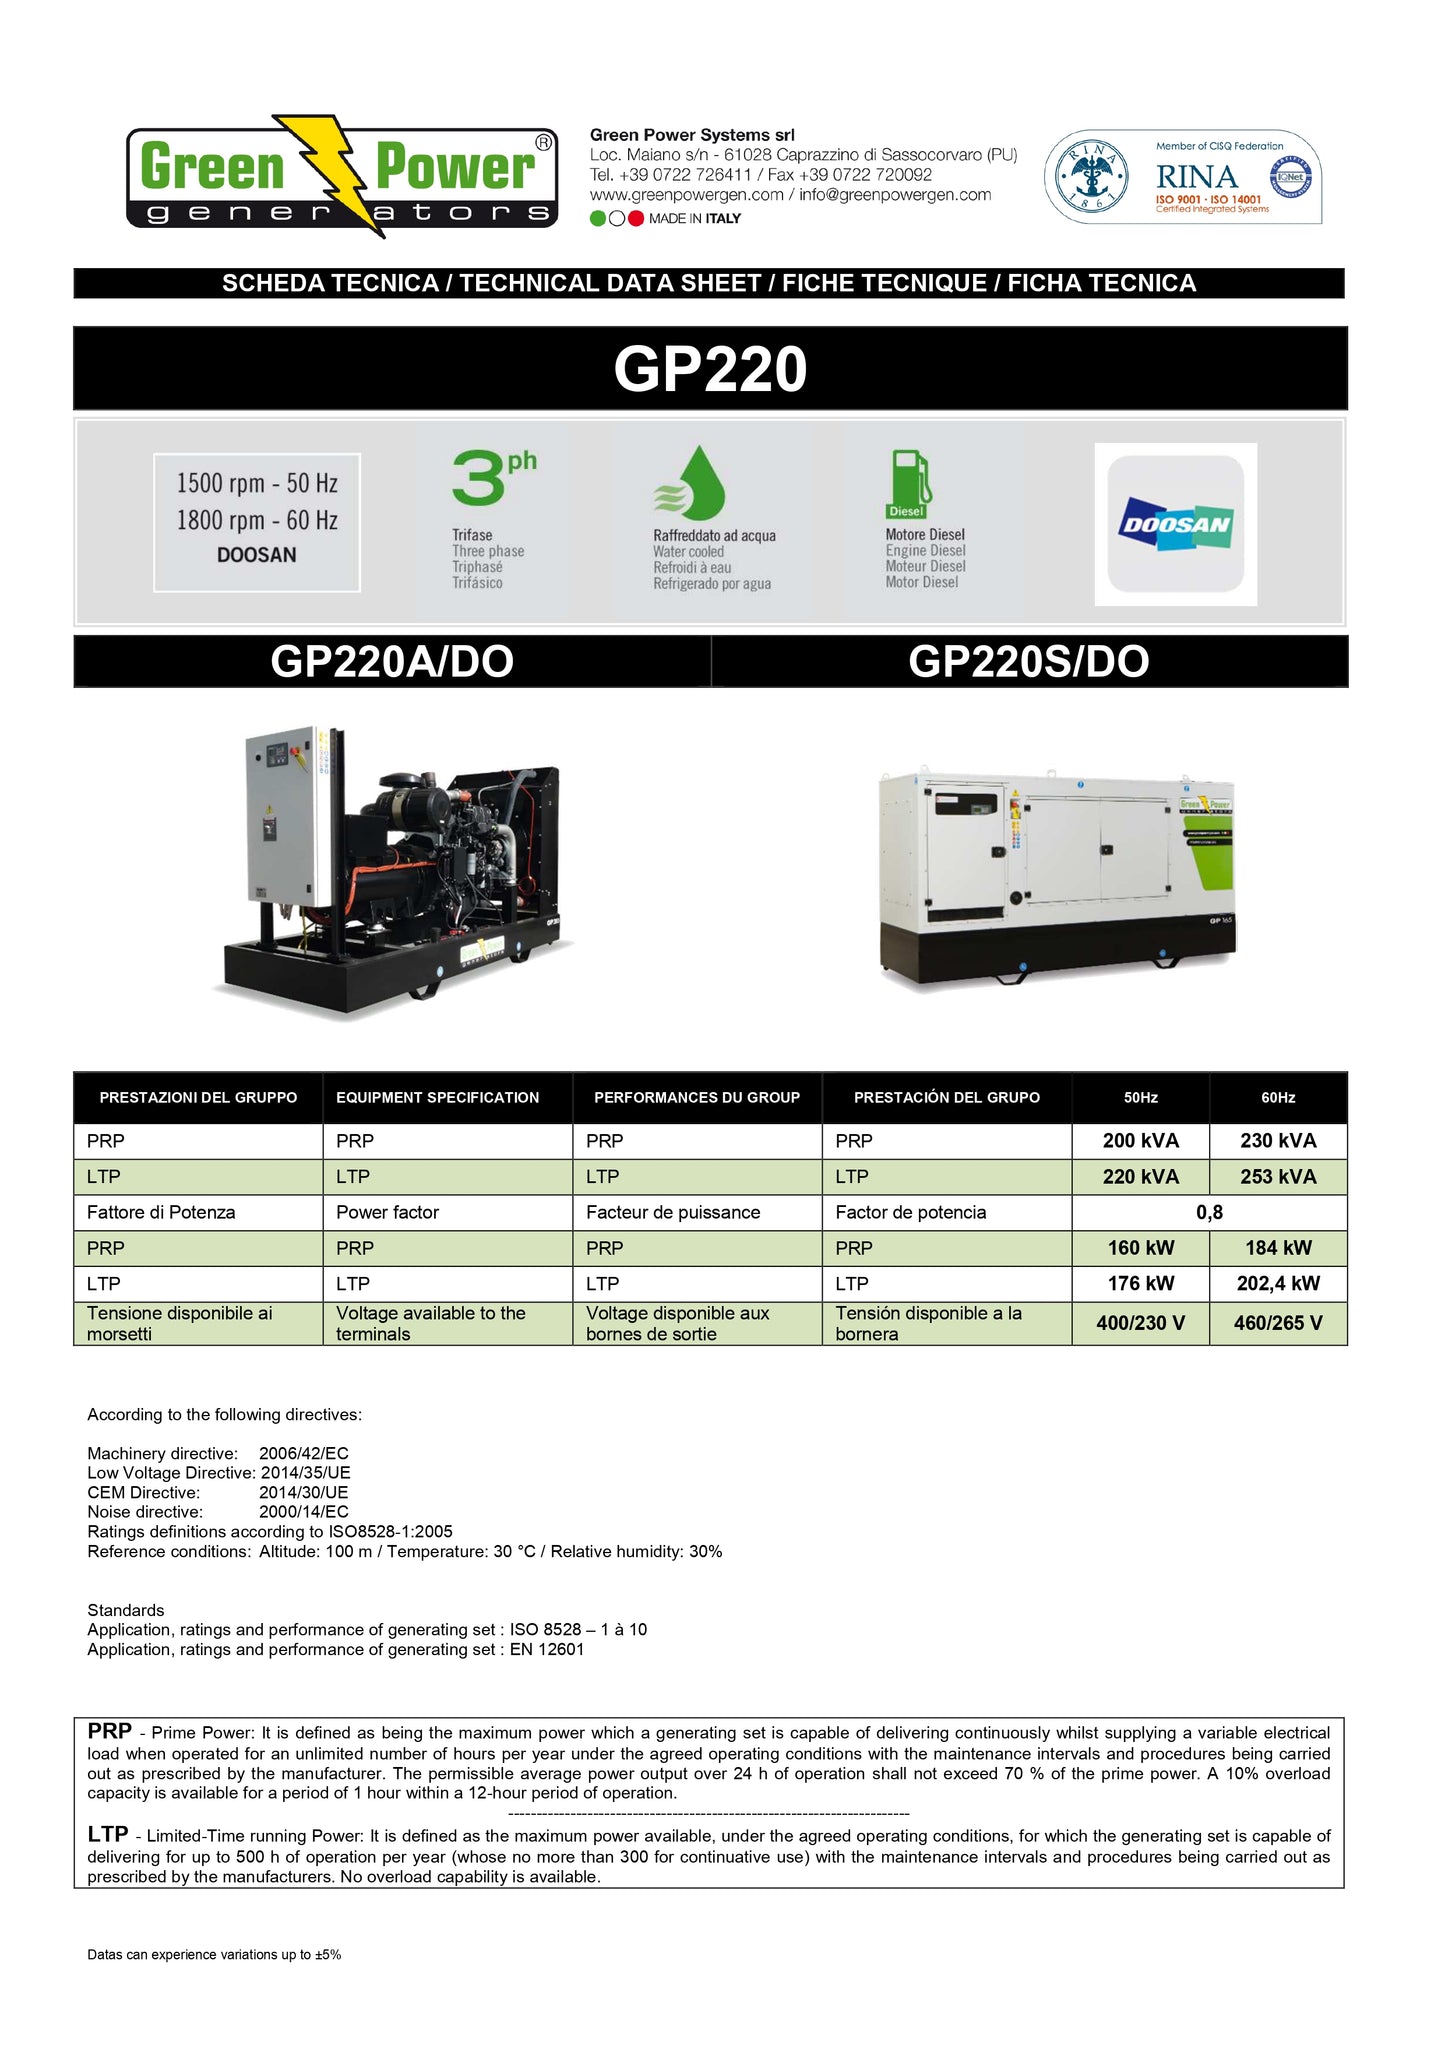 GP220DO